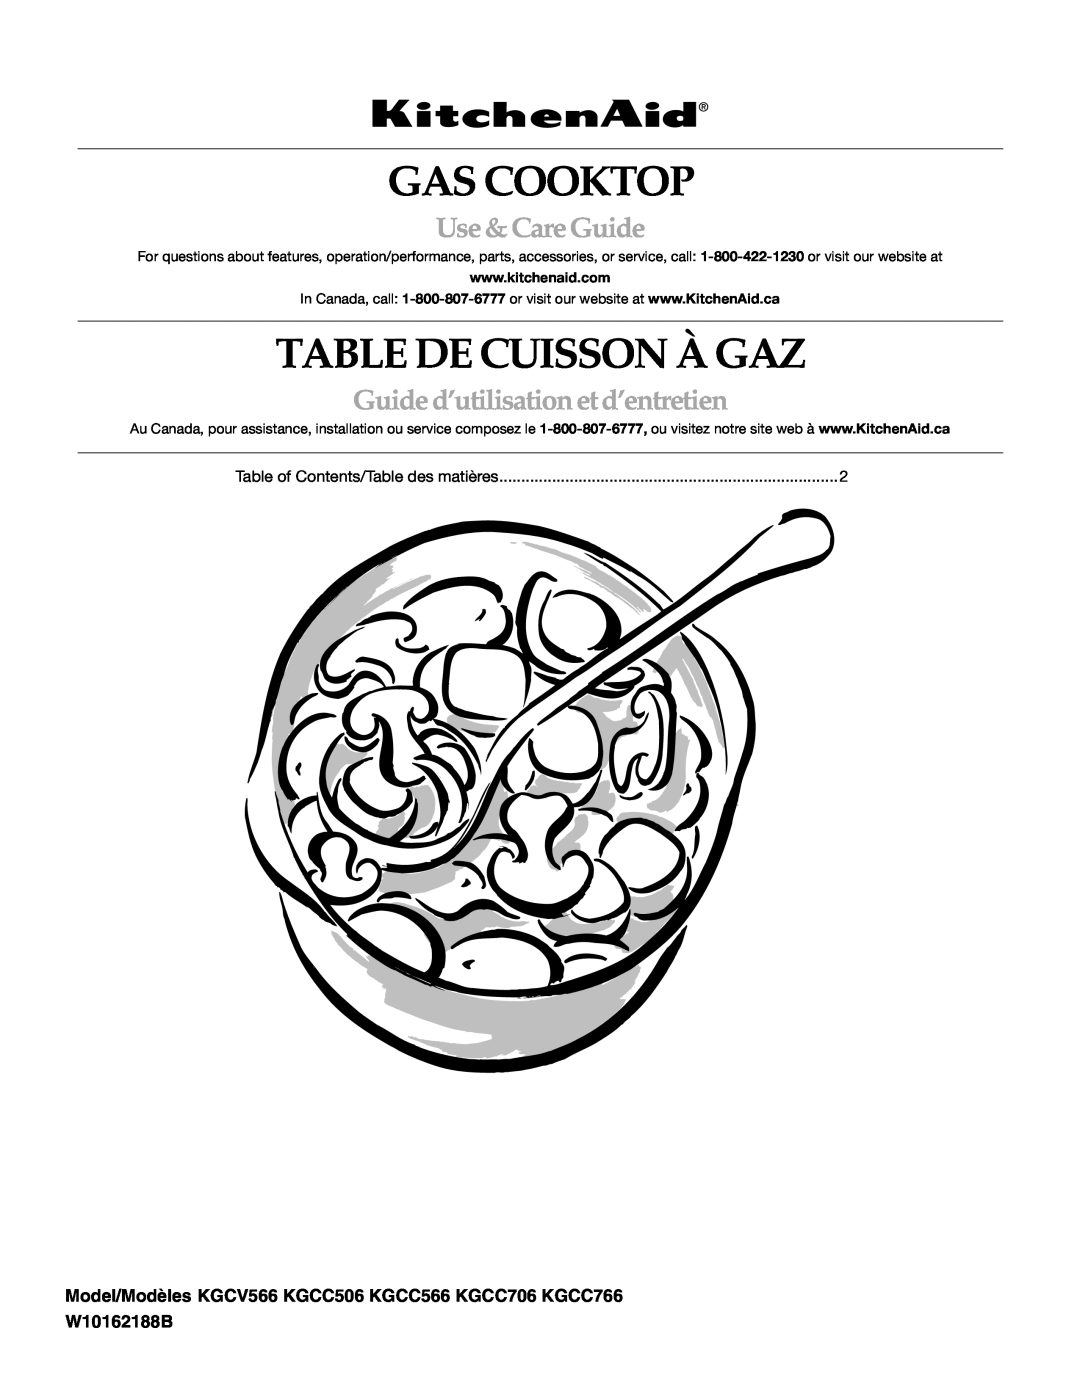 KitchenAid KGCV566 manual Gas Cooktop, Table De Cuisson À Gaz, Use & Care Guide, Guide d’utilisation et d’entretien 